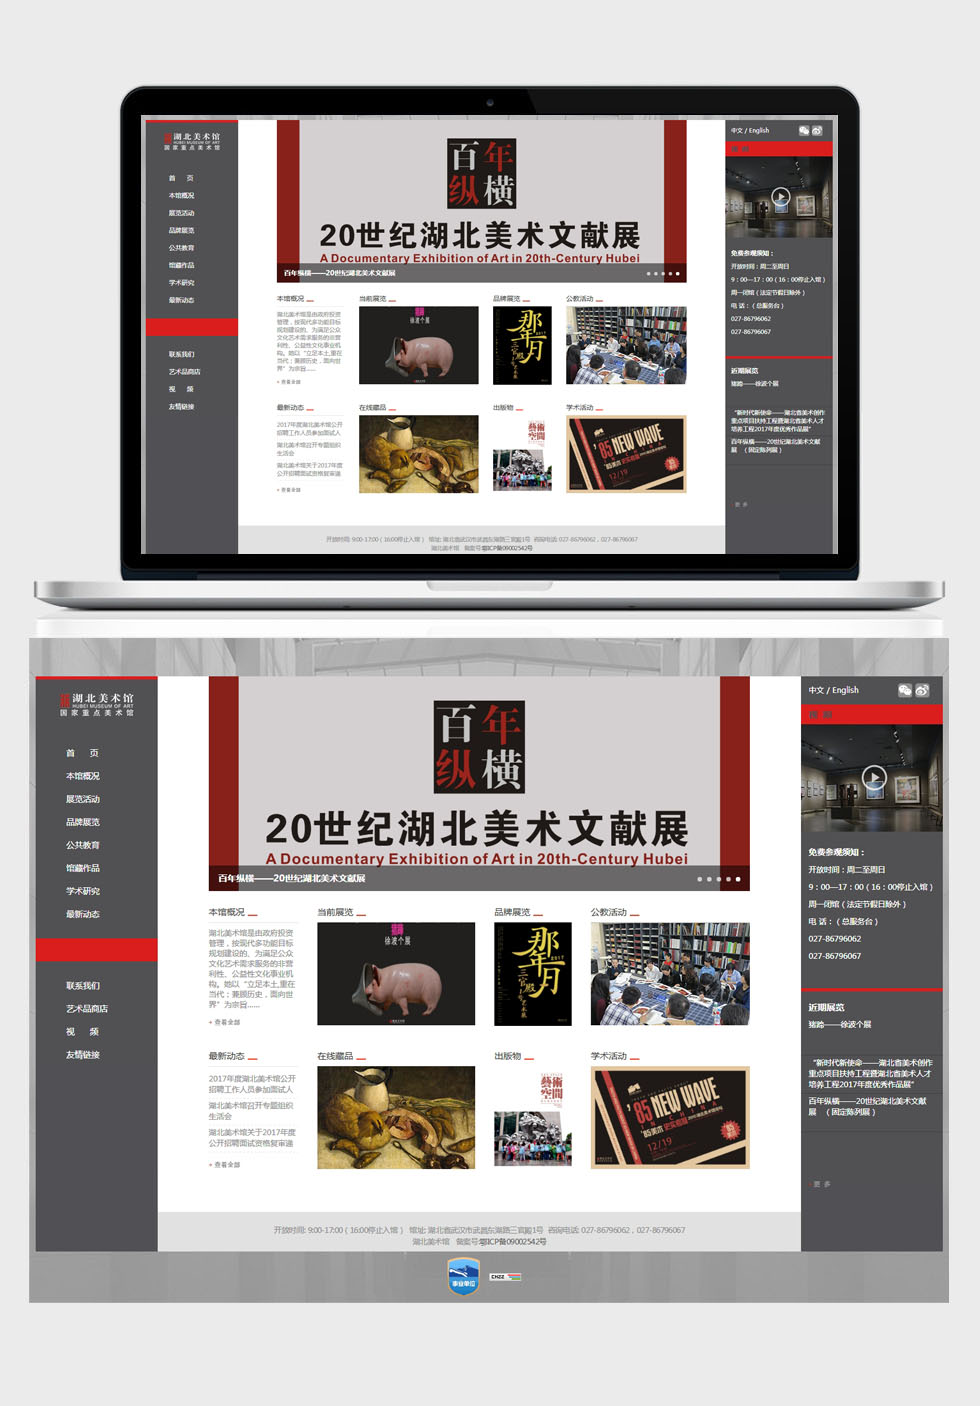 最准的香港马资料网站